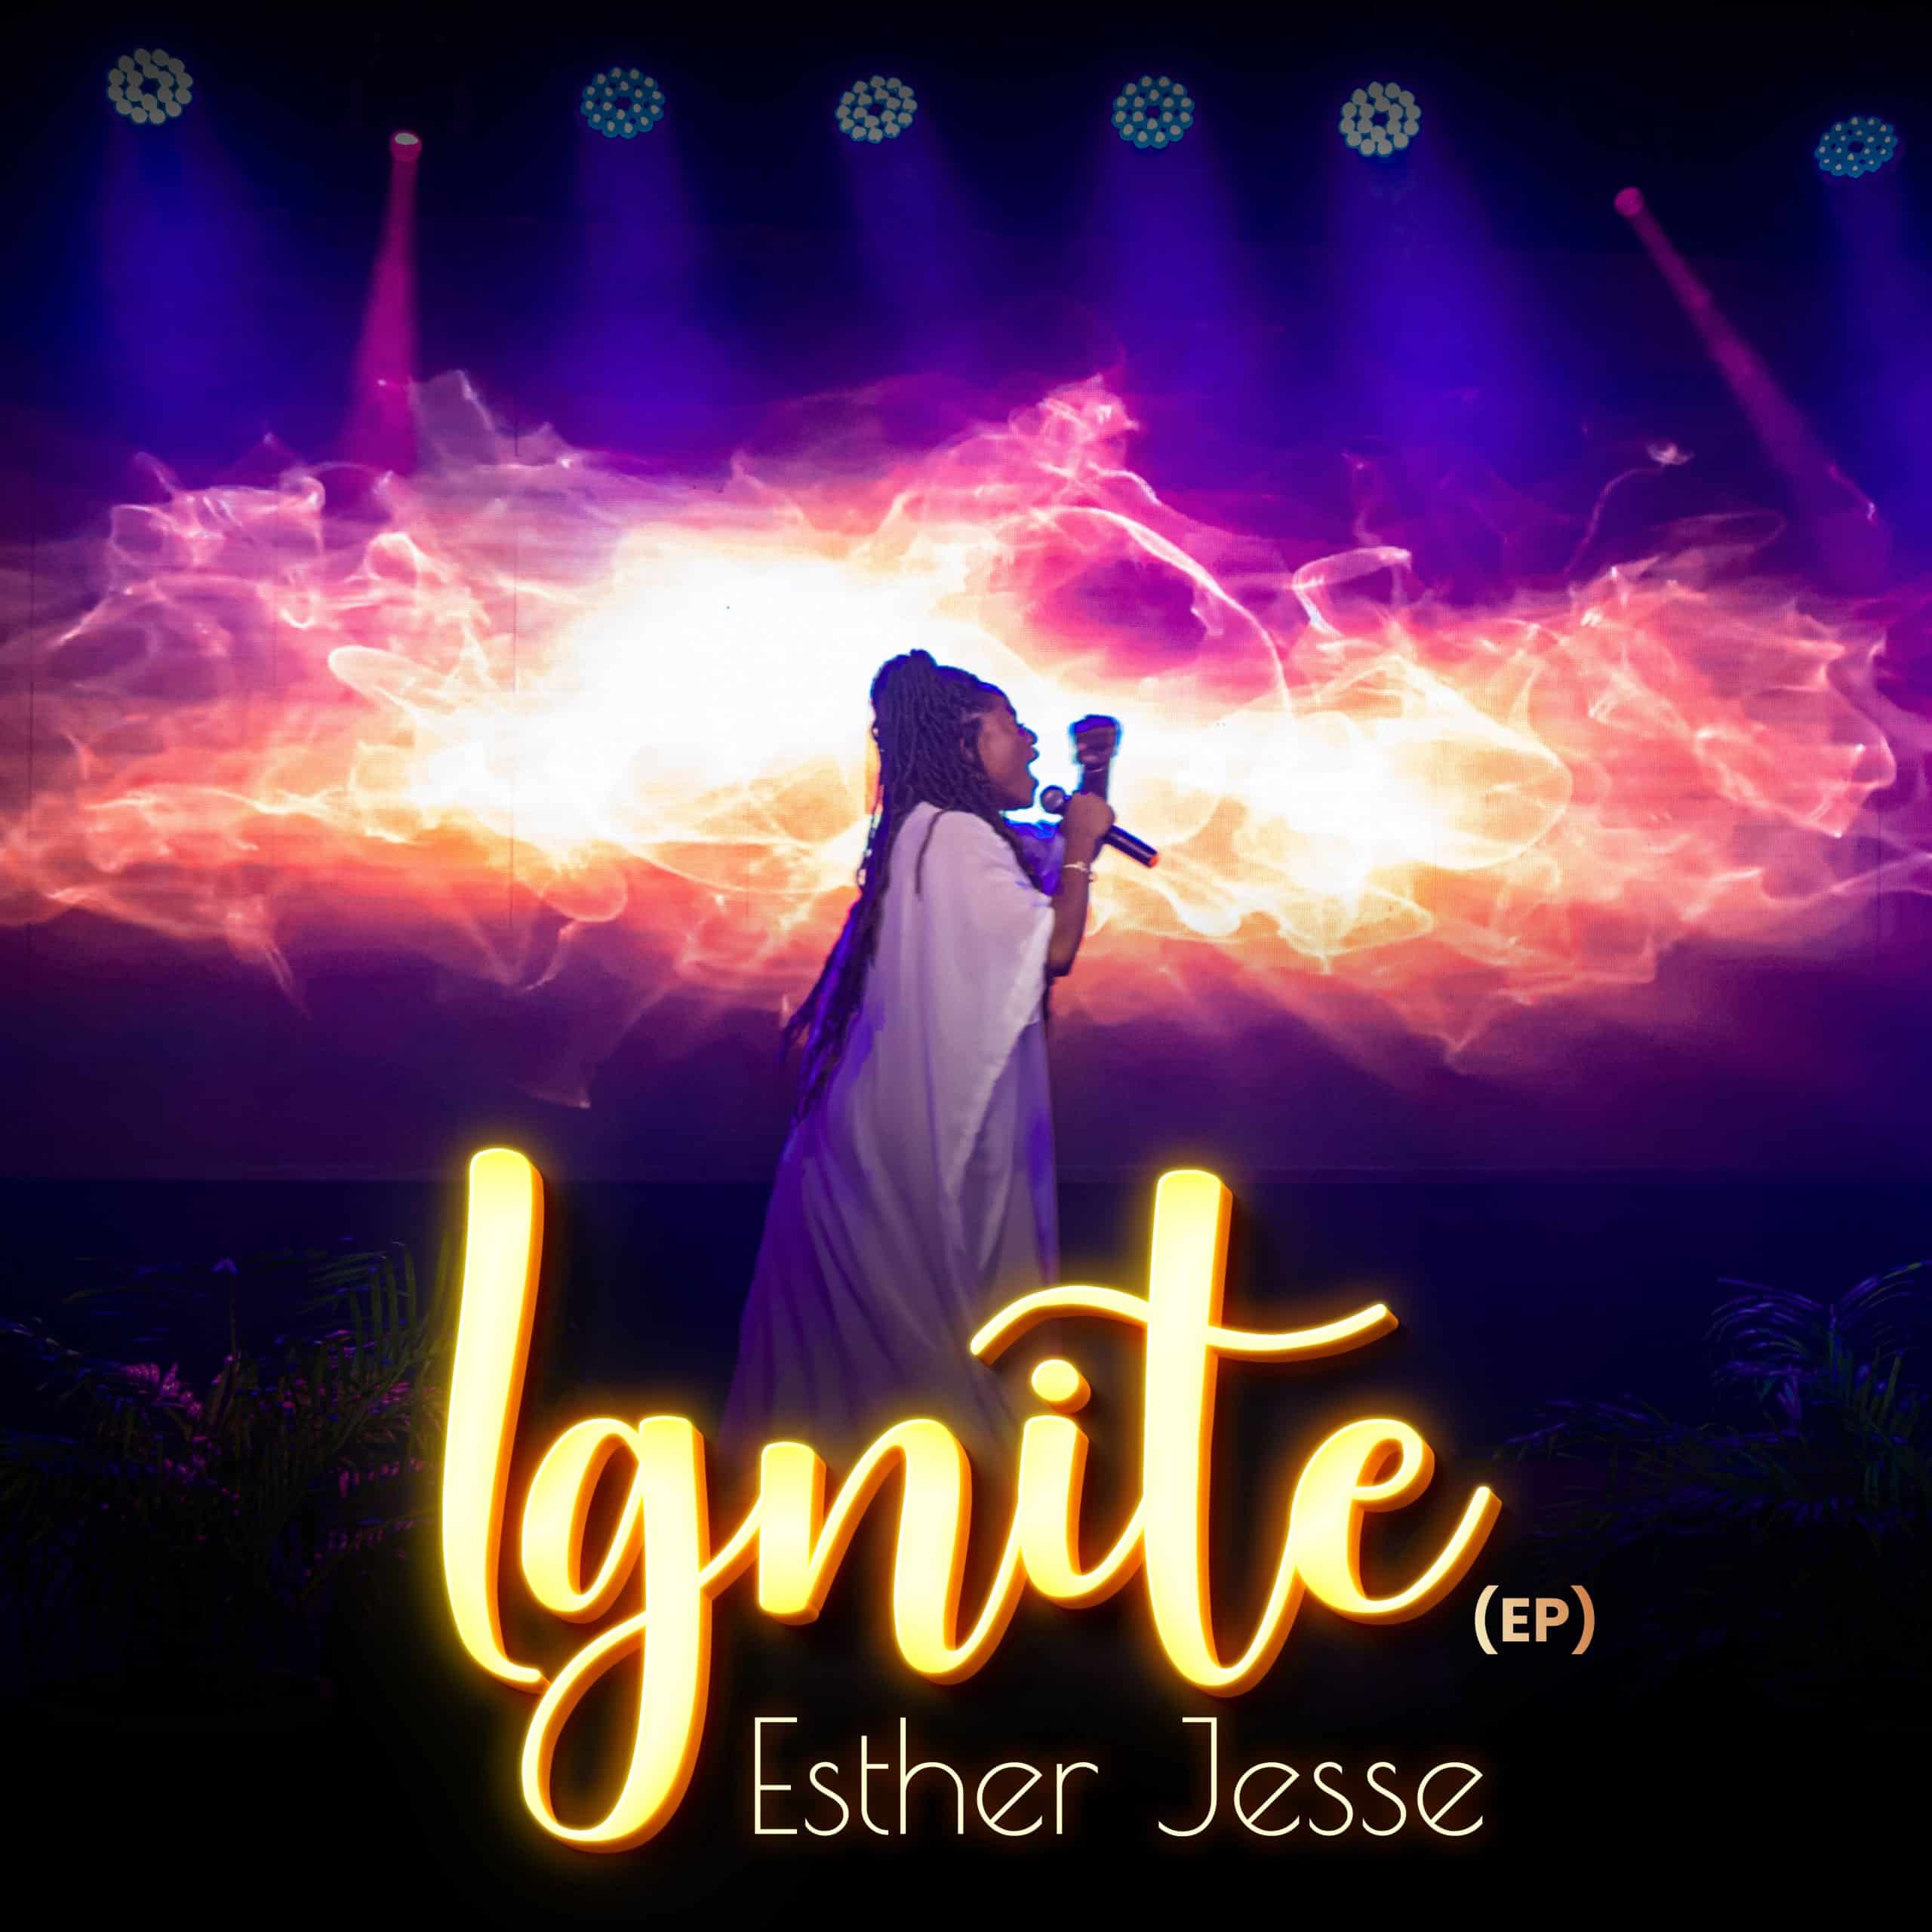 Esther Jesse – Ignite (EP)